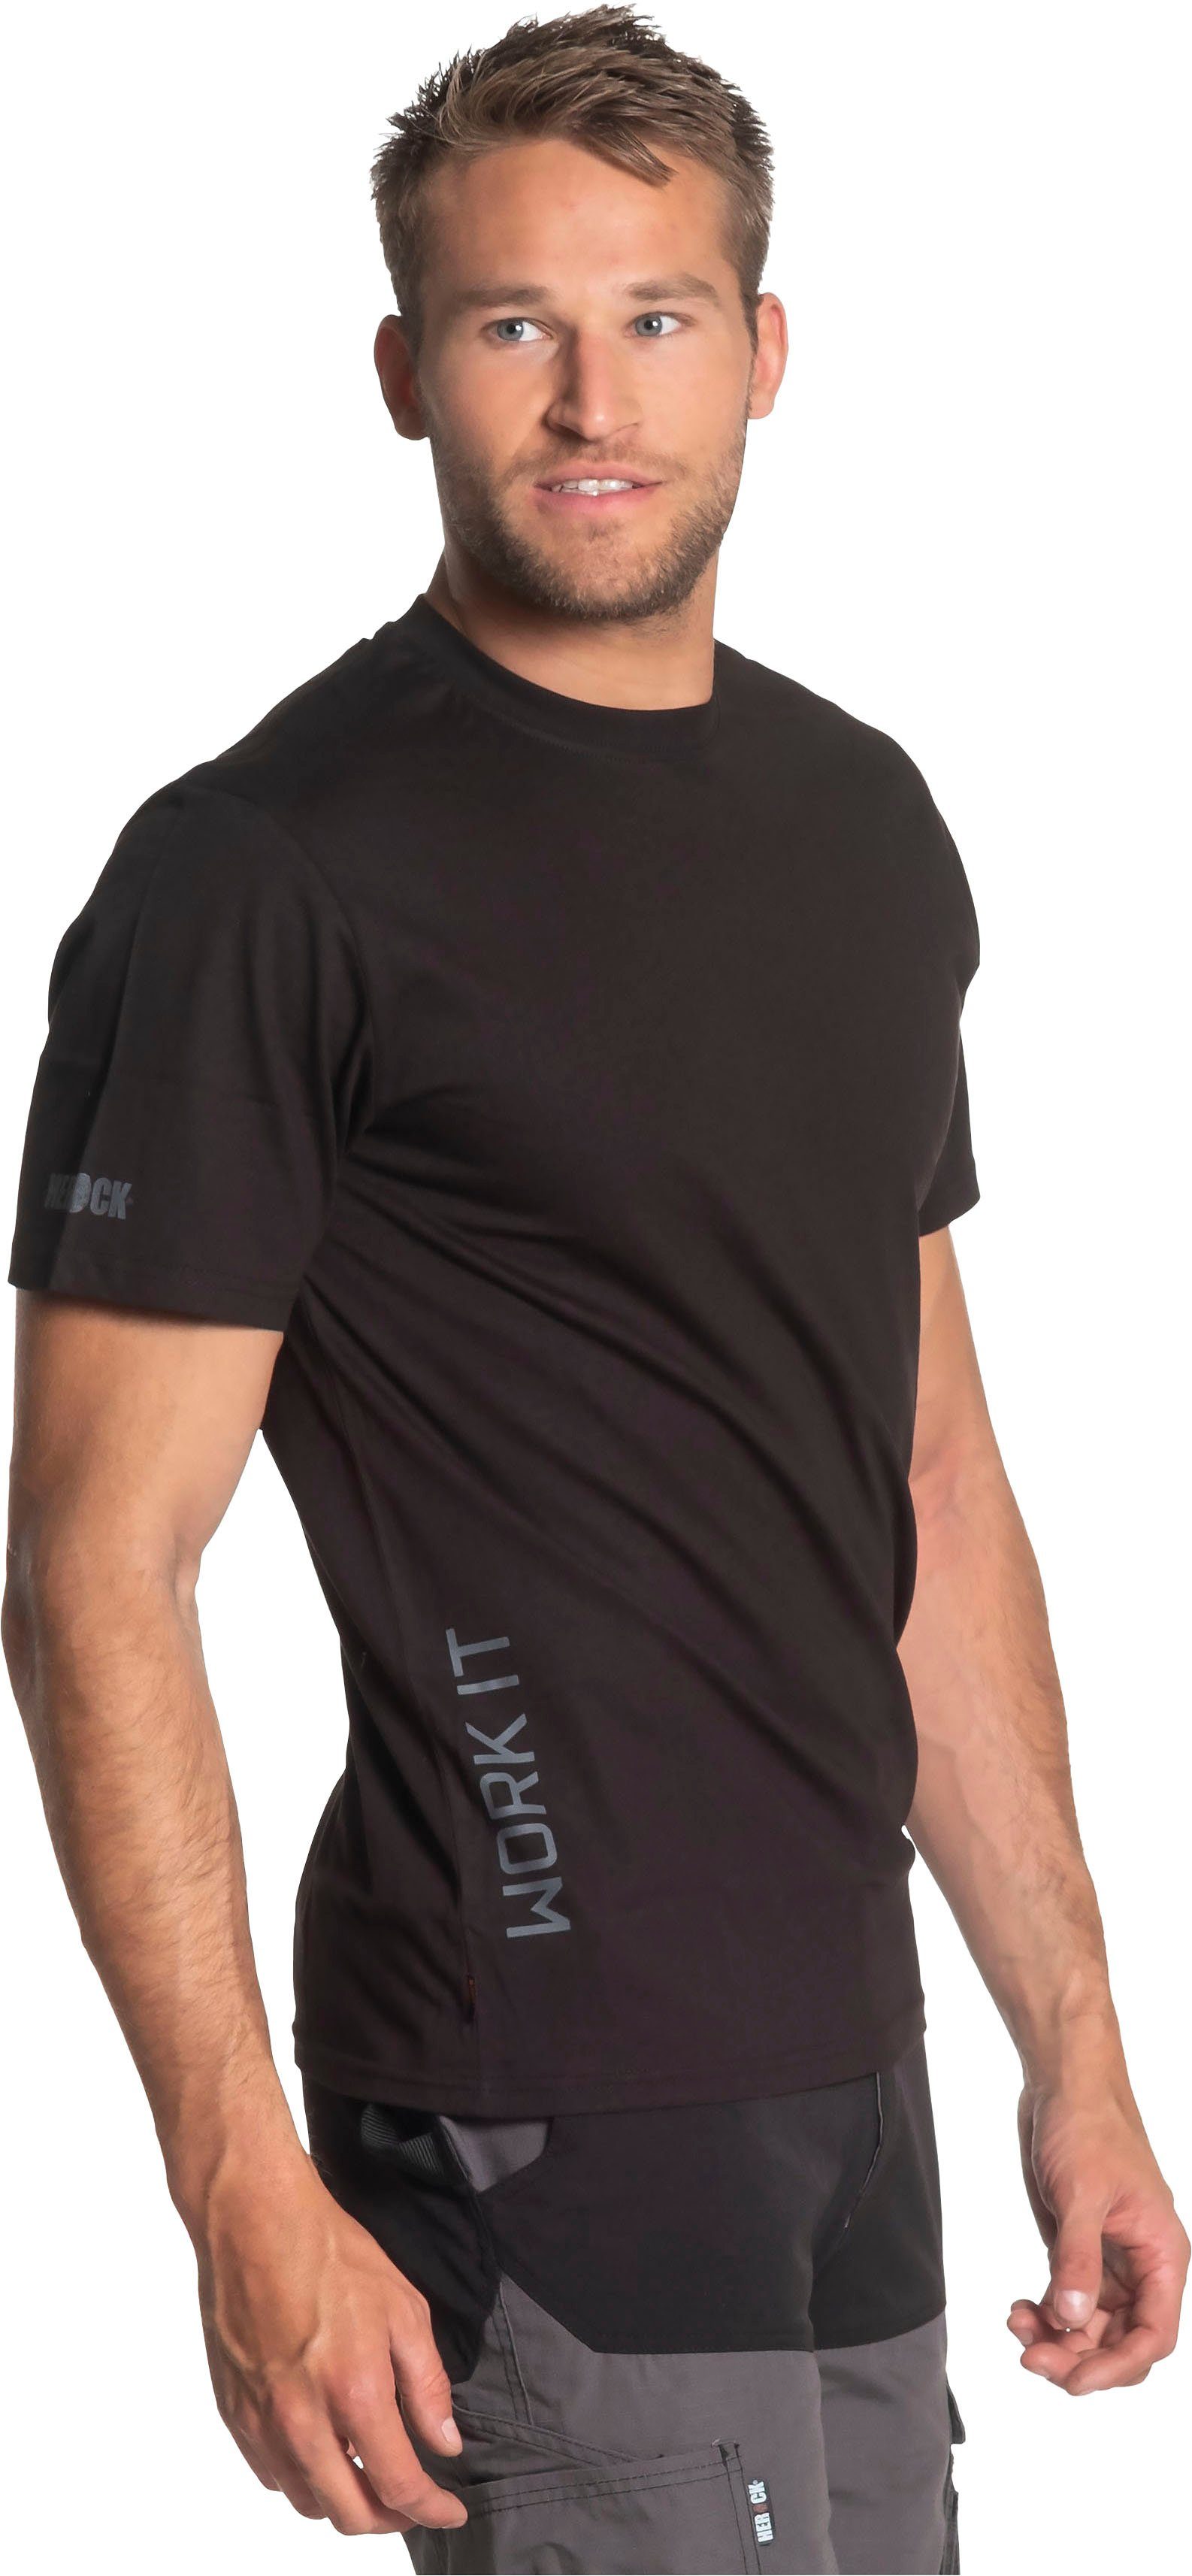 Herock®-Aufdruck, Rippstrickkragen Ärmel T-Shirt kurze Herock Ärmel, schwarz Callius T-Shirt Rundhalsausschnitt, kurze